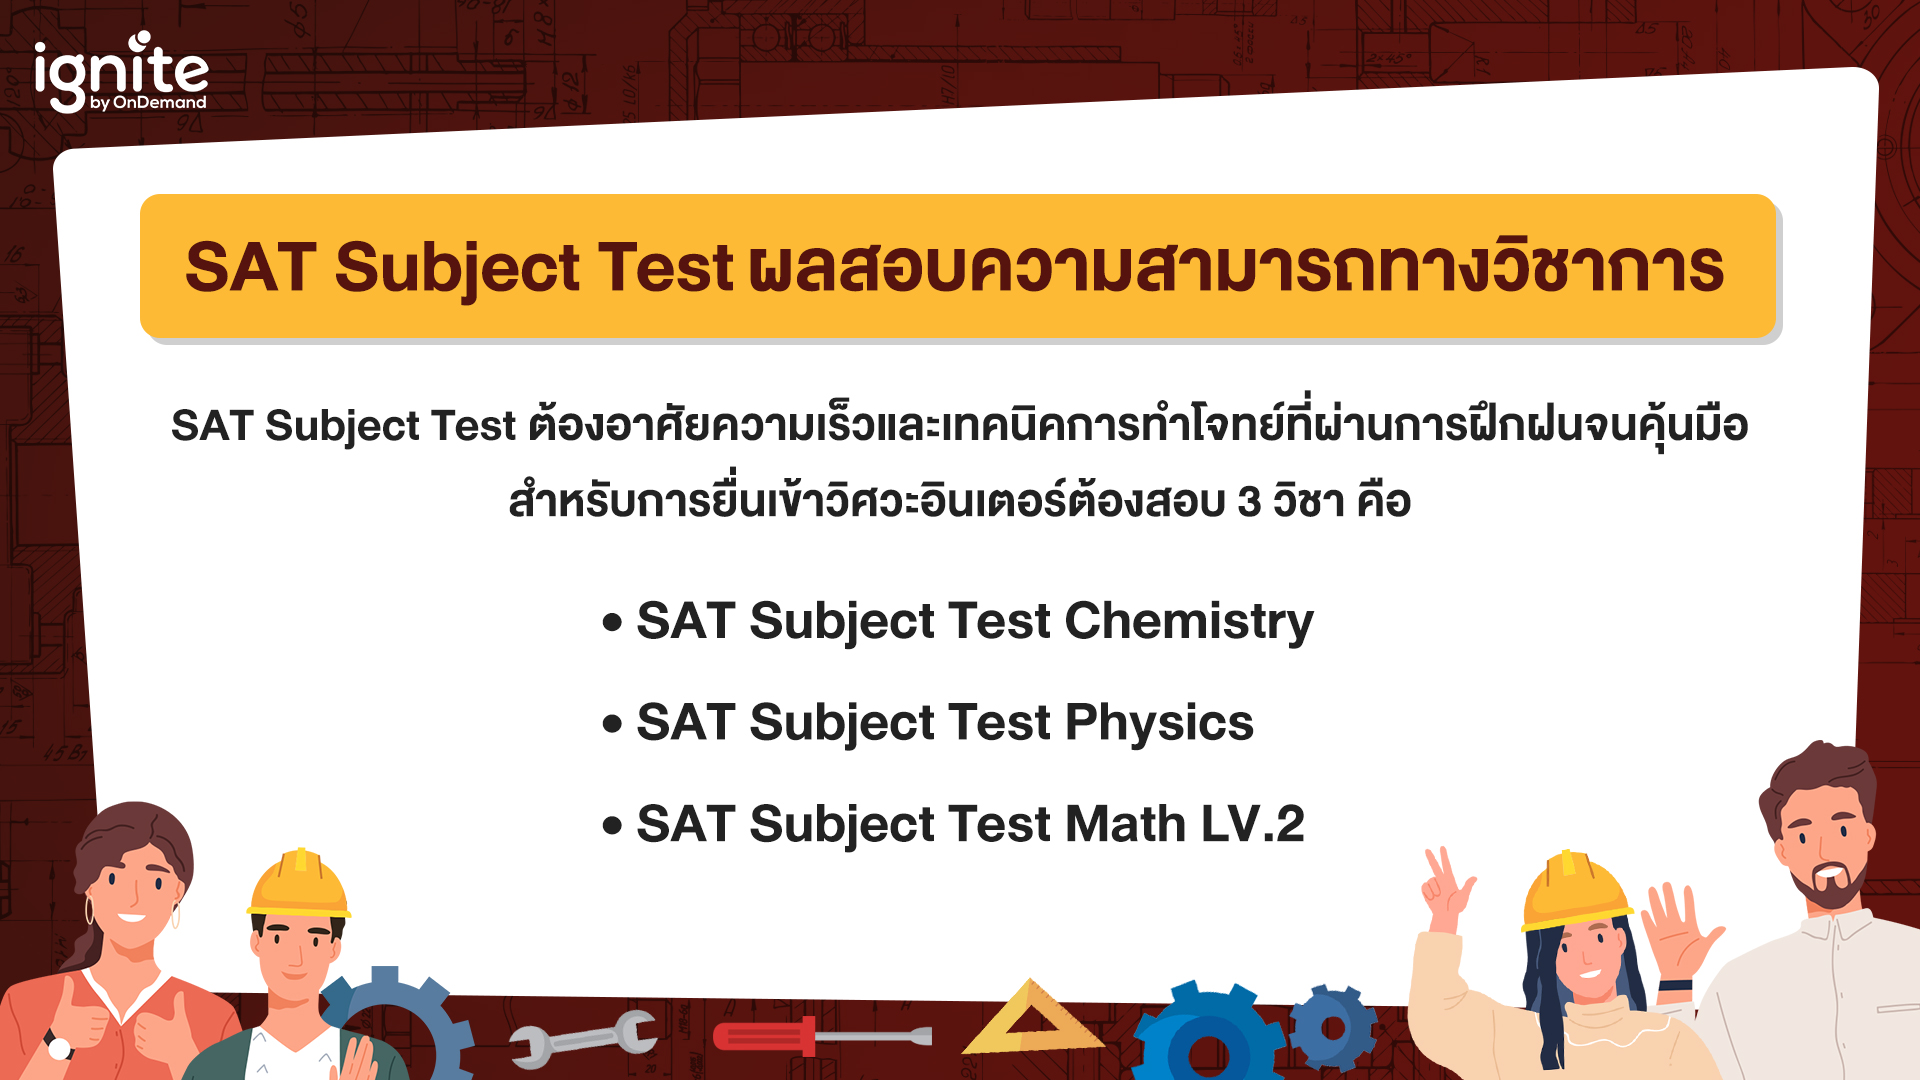 สอบเข้าวิศวะเตอร์ SAT Subject Tests - ISE - Bigcover2